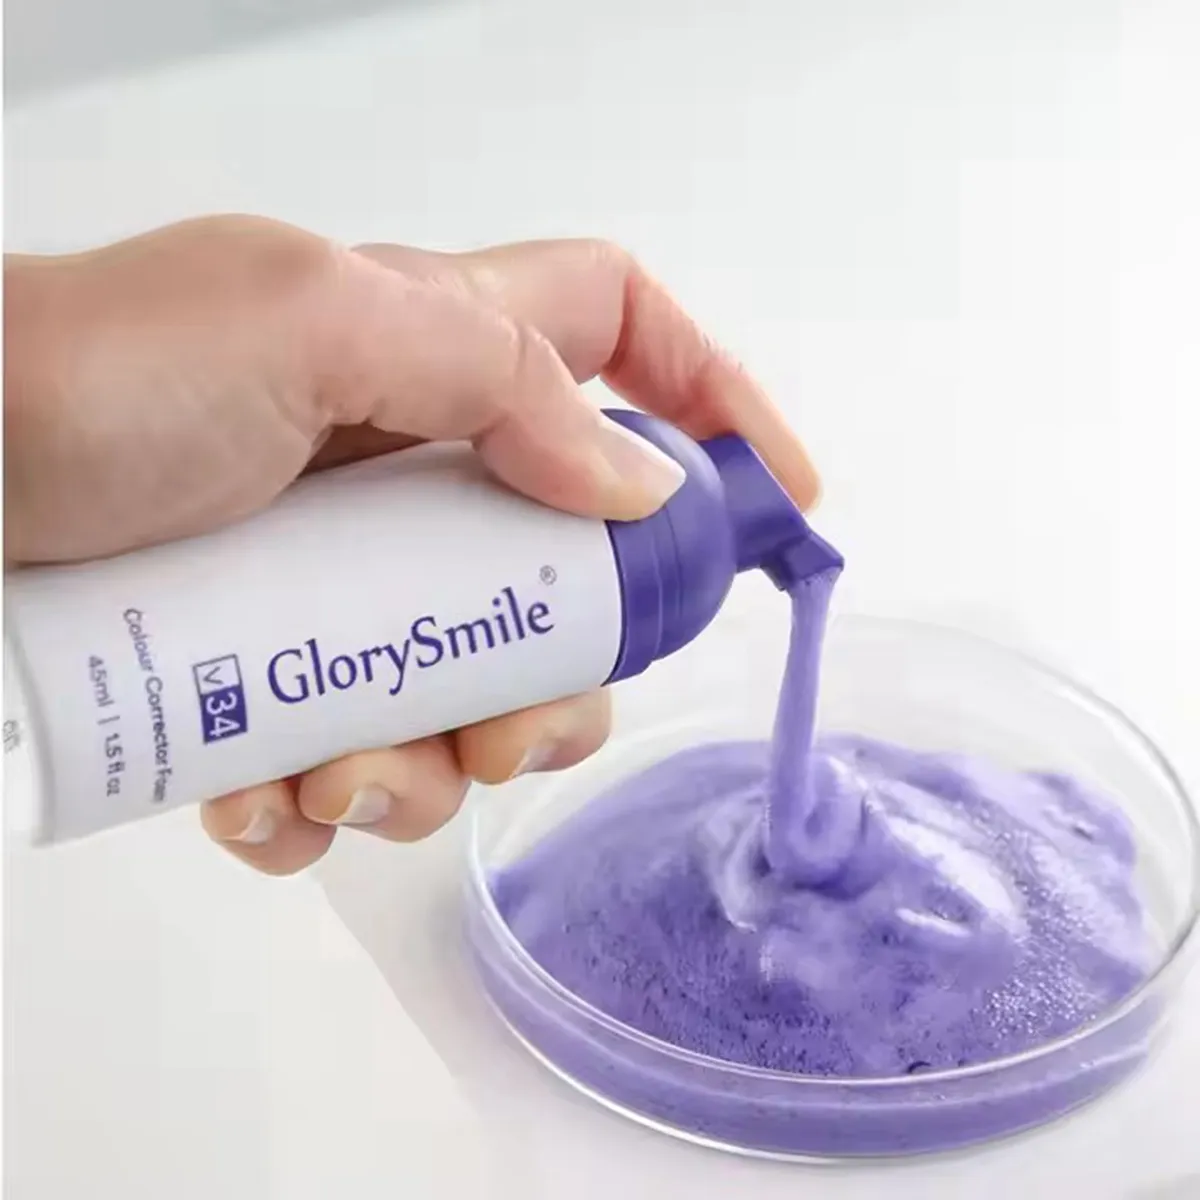 Correcteur de couleur V34, dentifrice Glory Smile pour le blanchiment des dents, détachant violet V34, 50ml